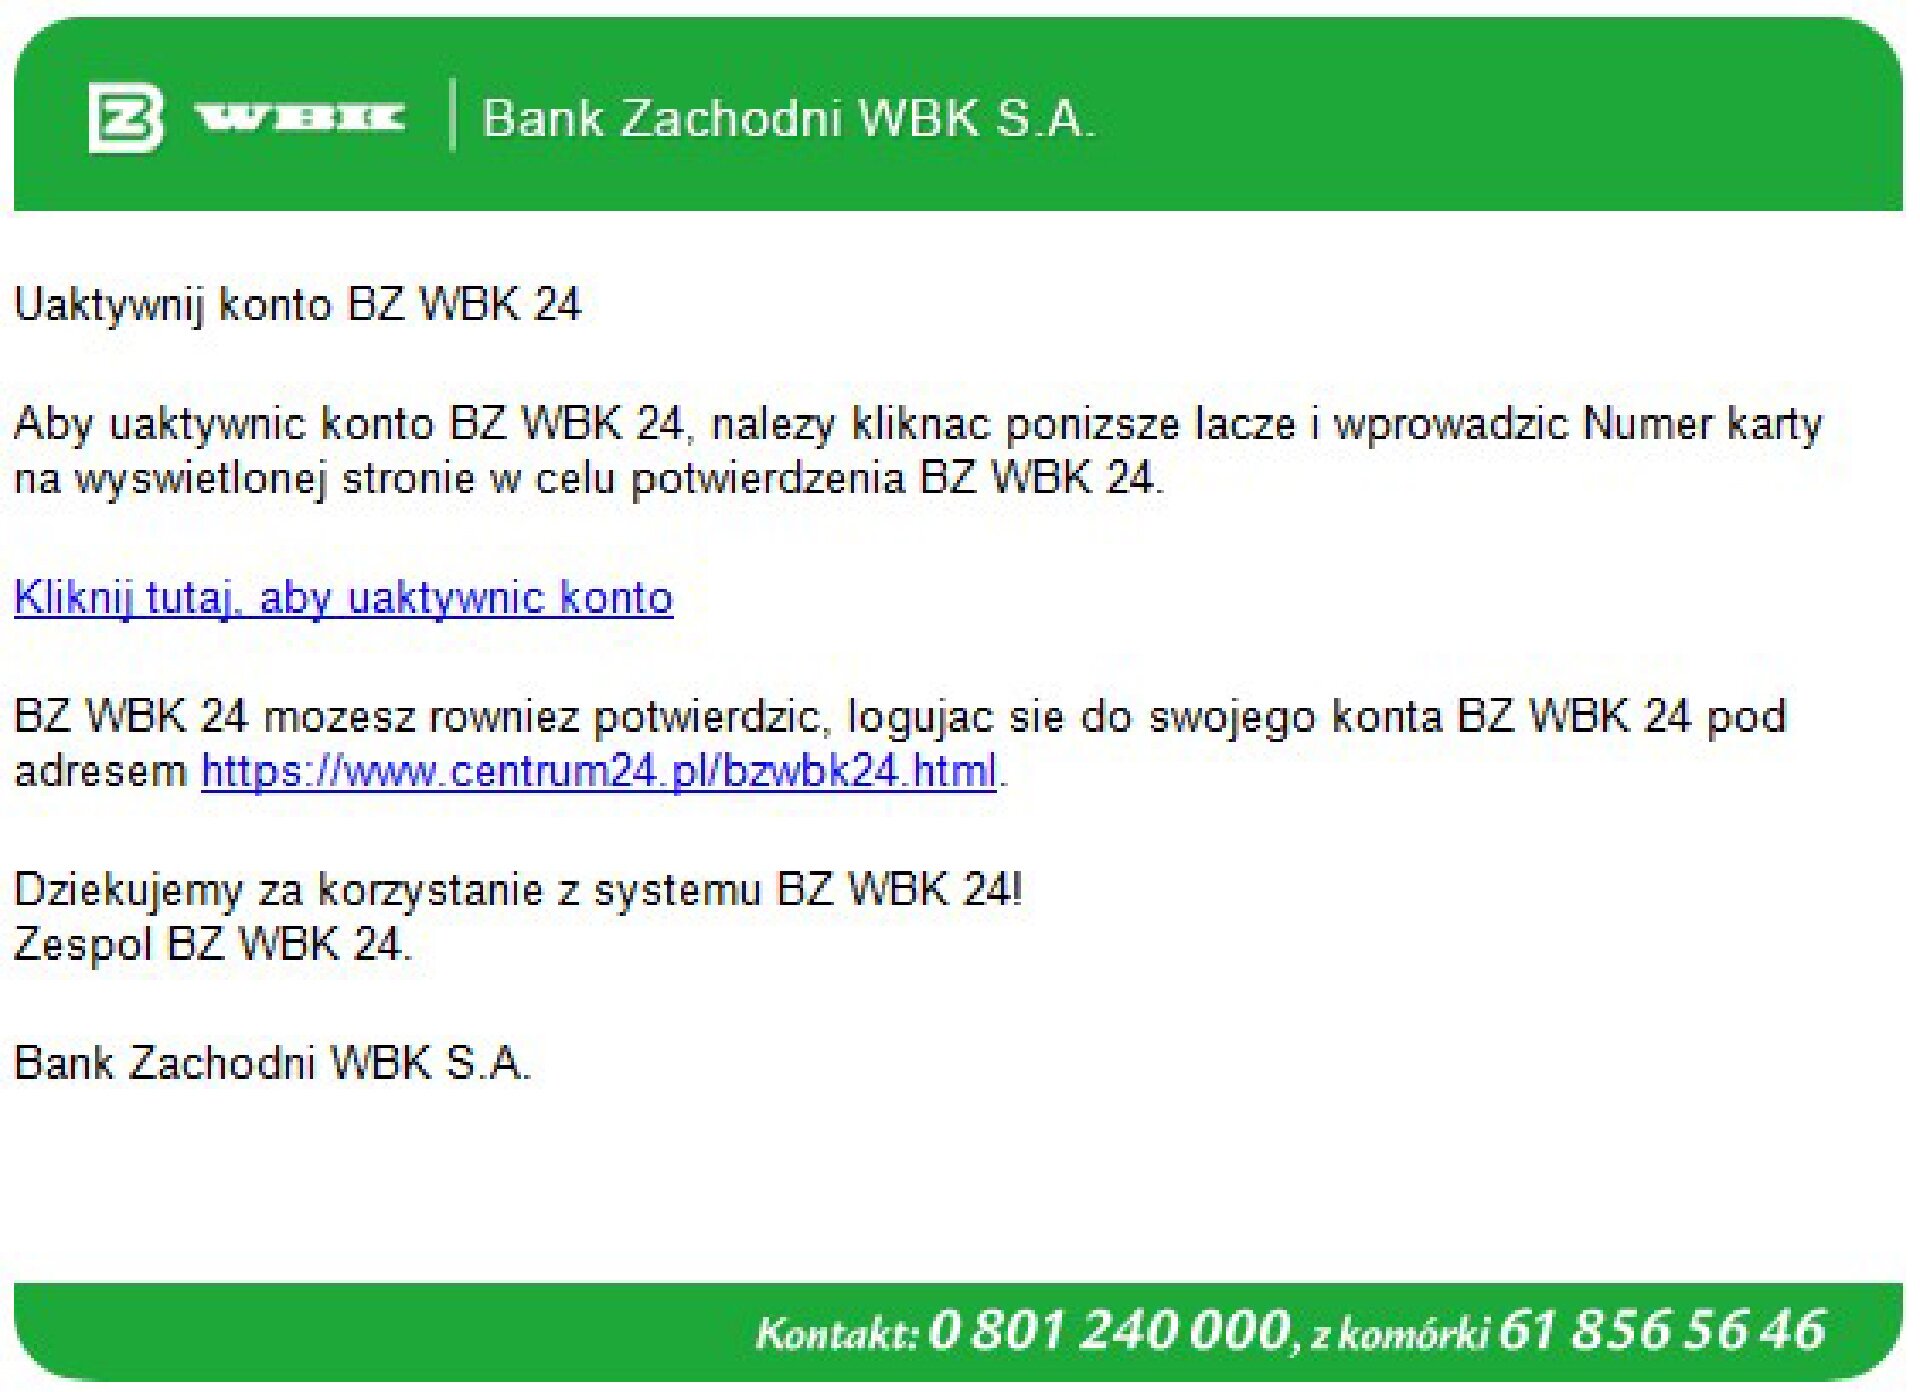 Okno aplikacji WBK SA